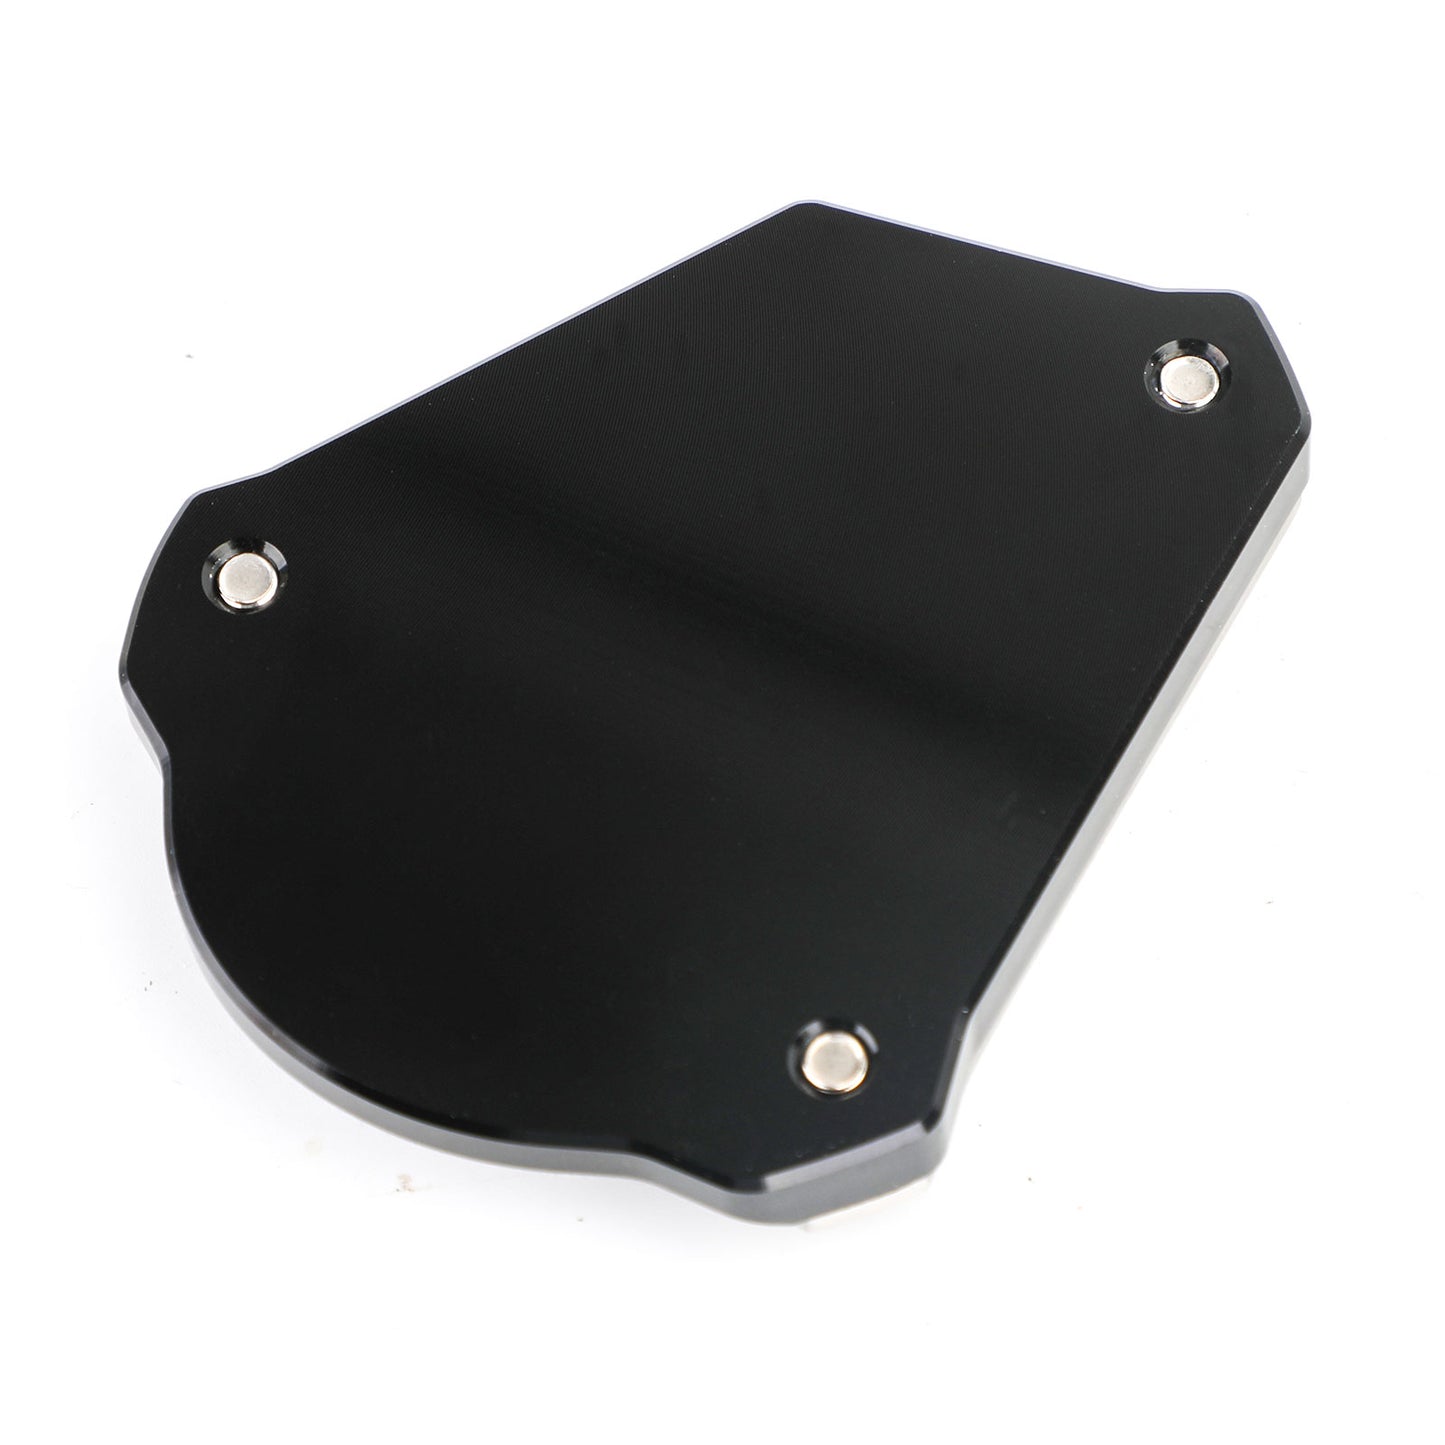 Plaque de protection de béquille latérale compatible avec TRIUMPH Scrambler 1200 XC 1200 XE 2019-2020